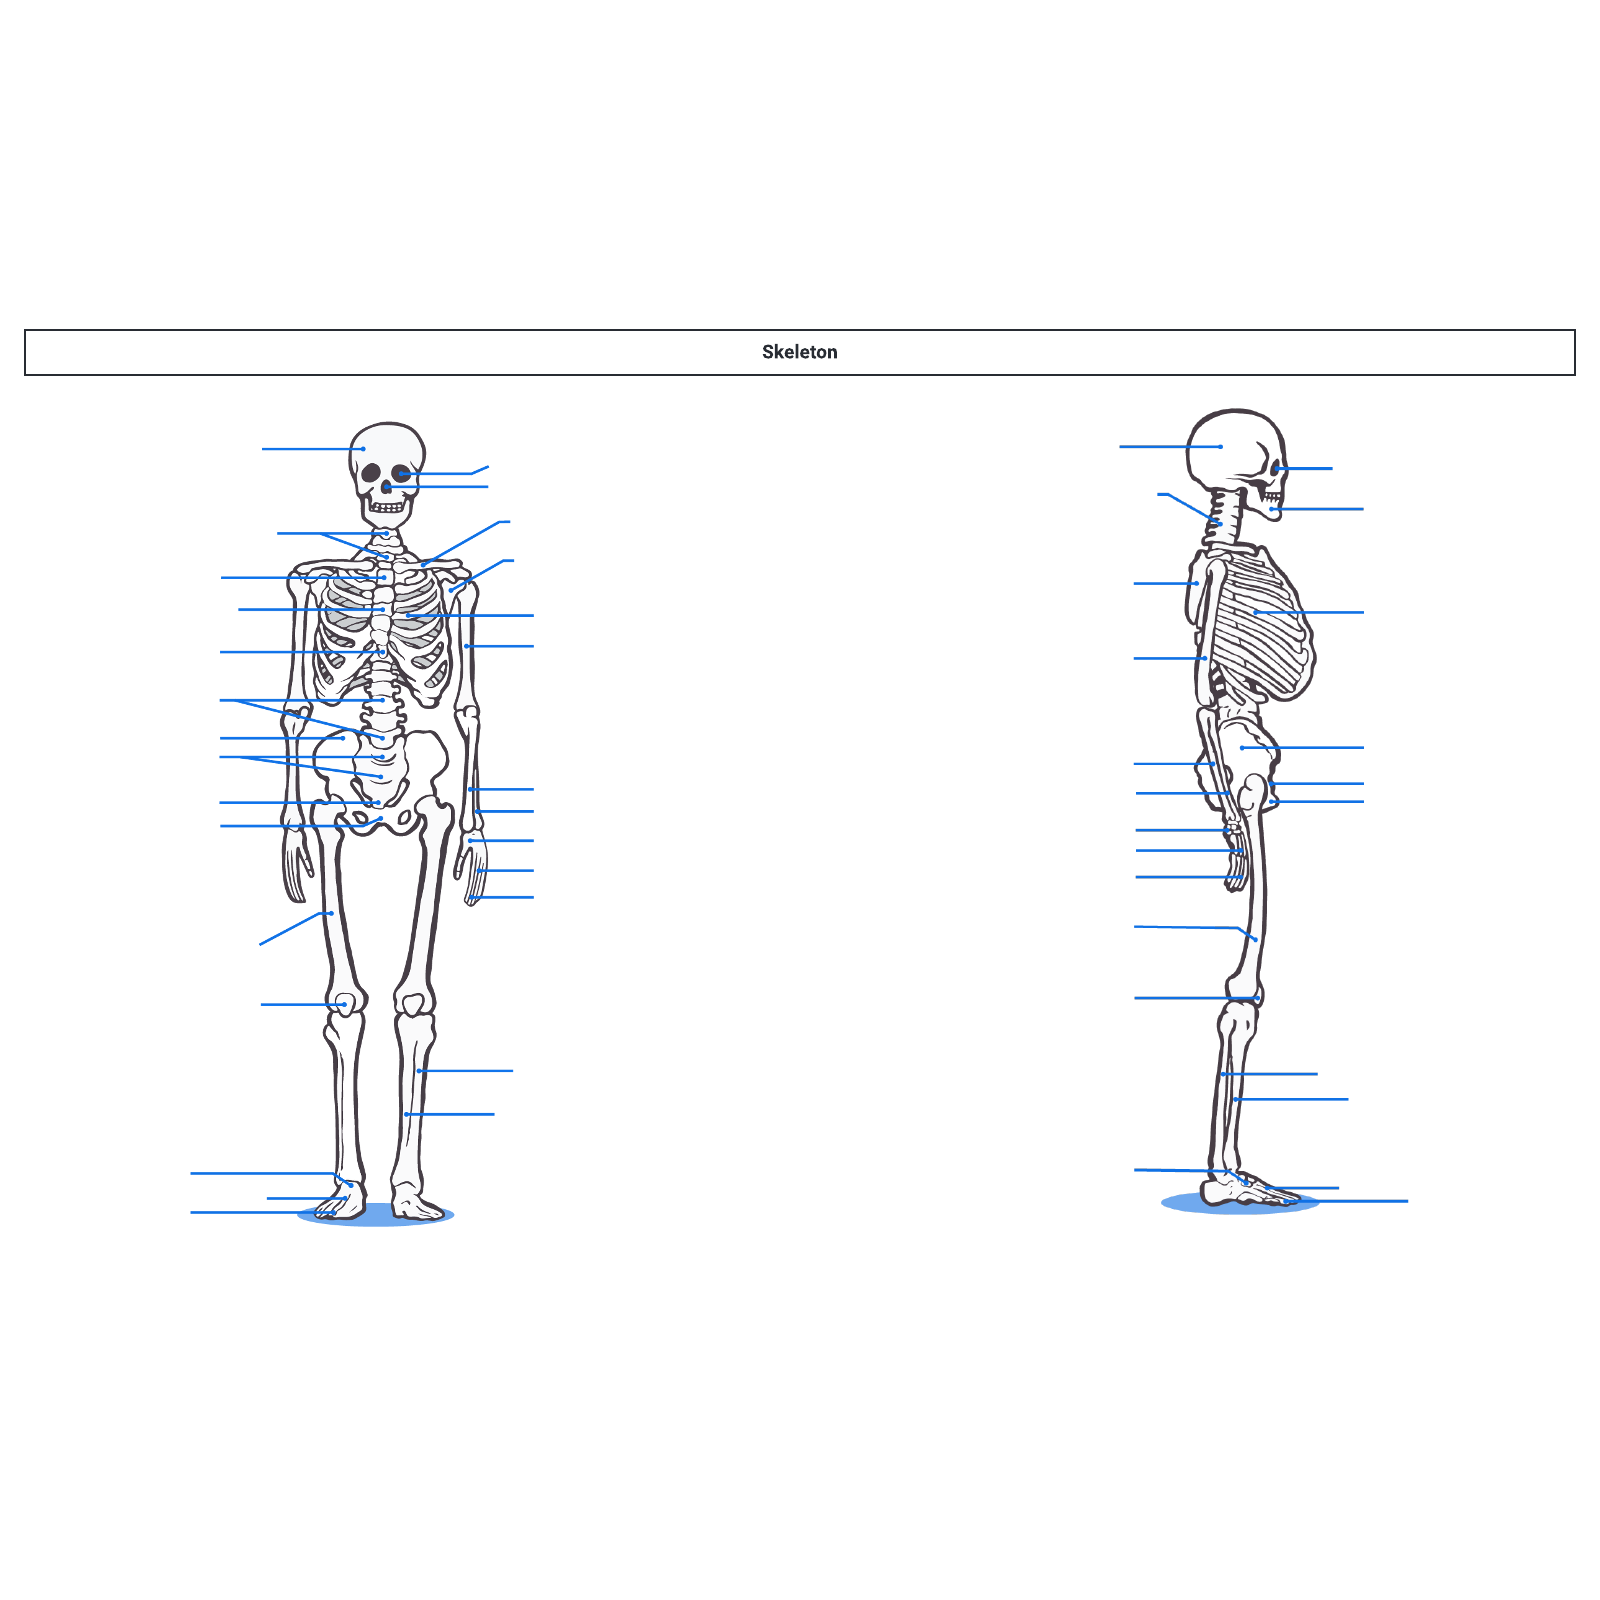 Skeleton diagram example